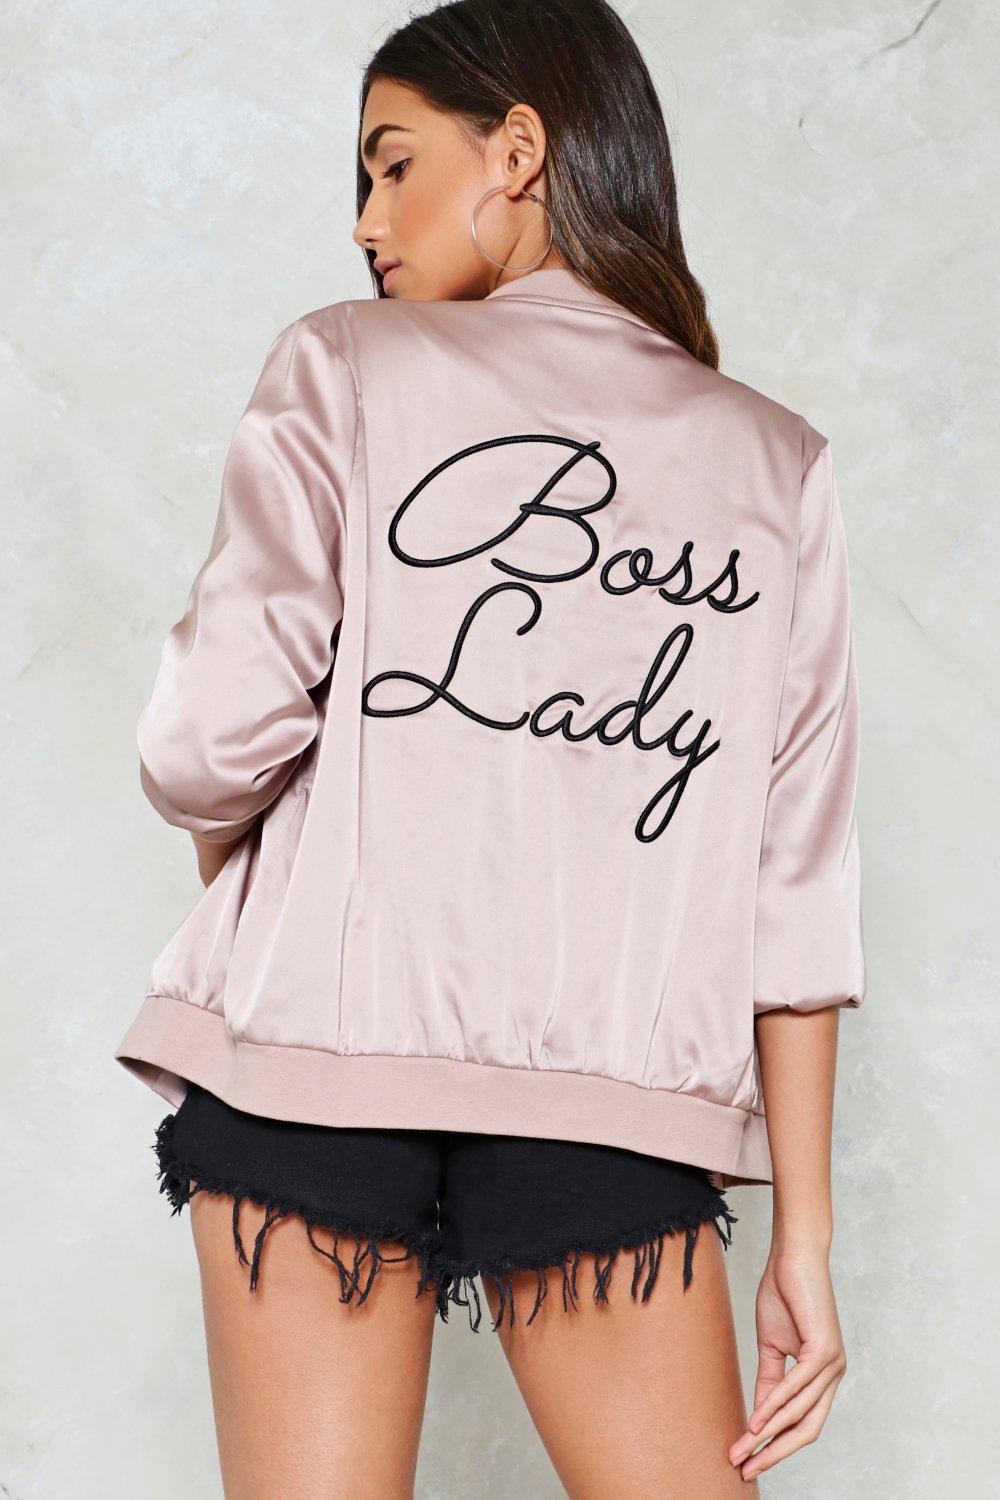 boss lady jacket